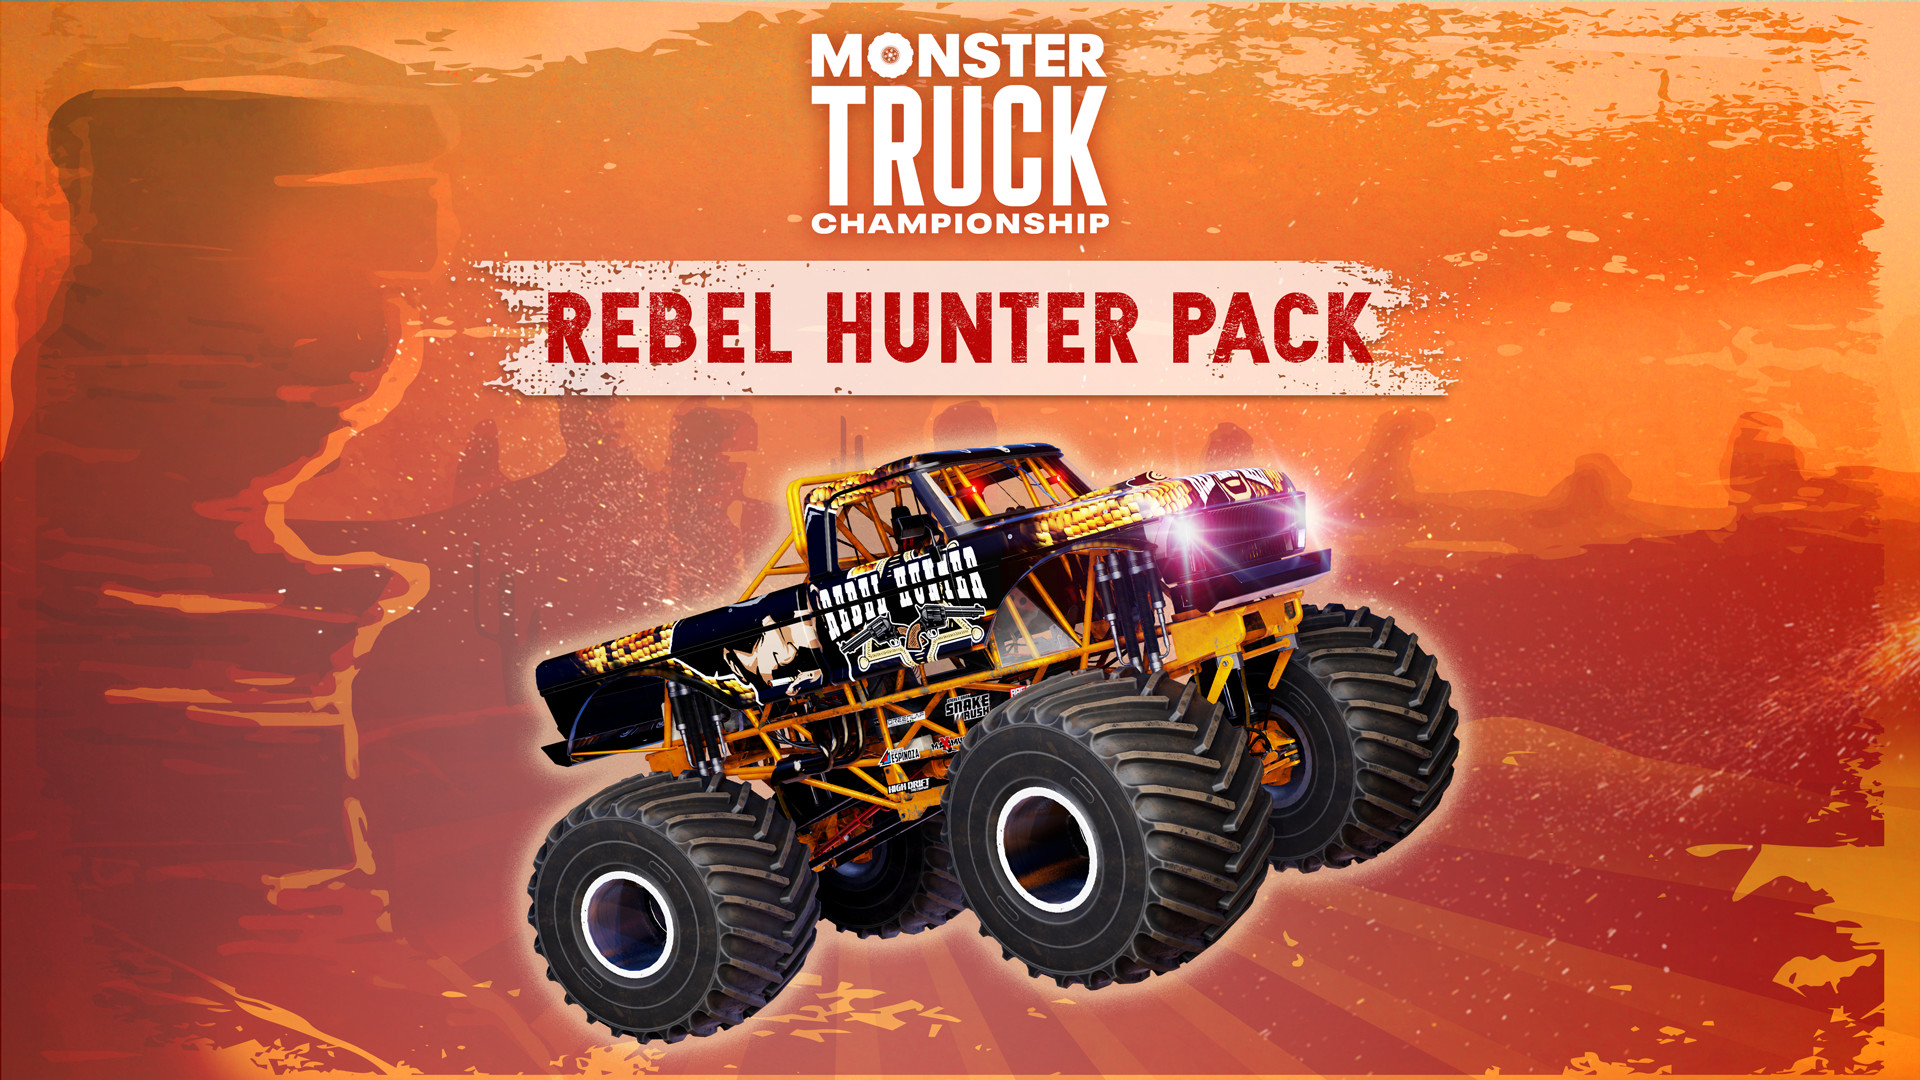 Monster Truck Championship - Rebel Hunter Pack DLC Steam CD Key, 10.16 usd